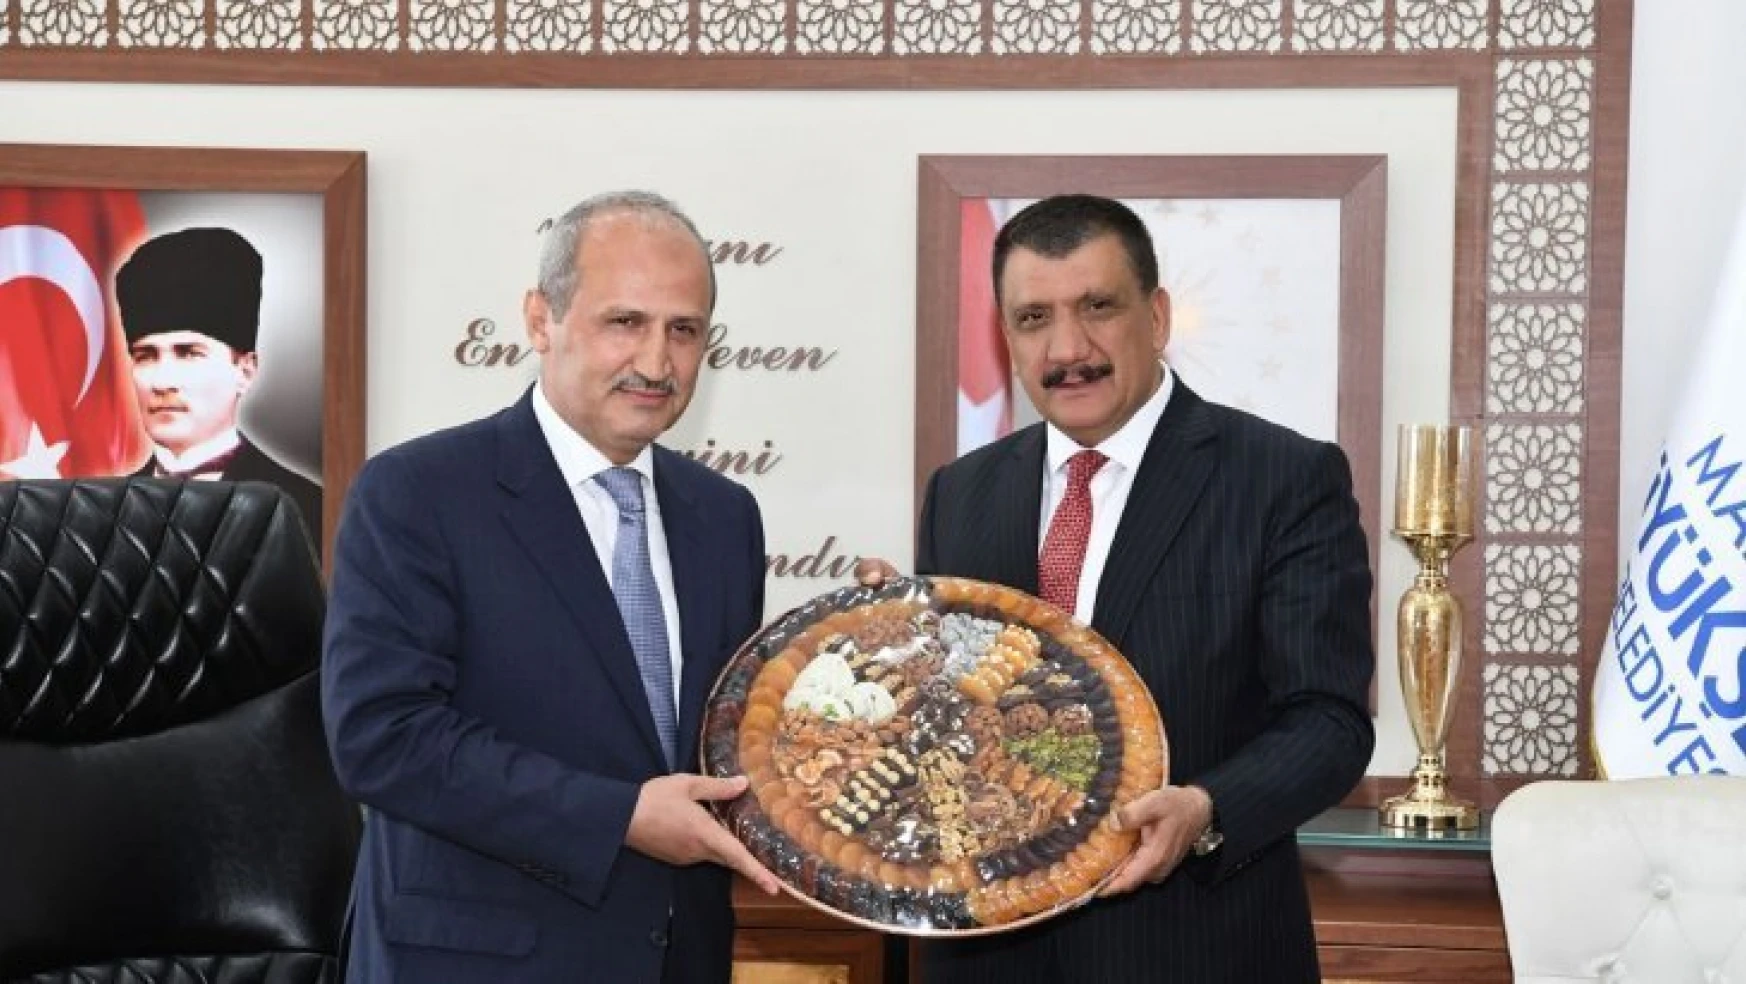 Ulaştırma ve Altyapı Bakanı Turan, Büyükşehir Belediye Başkanı Gürkan'ı ziyaret etti